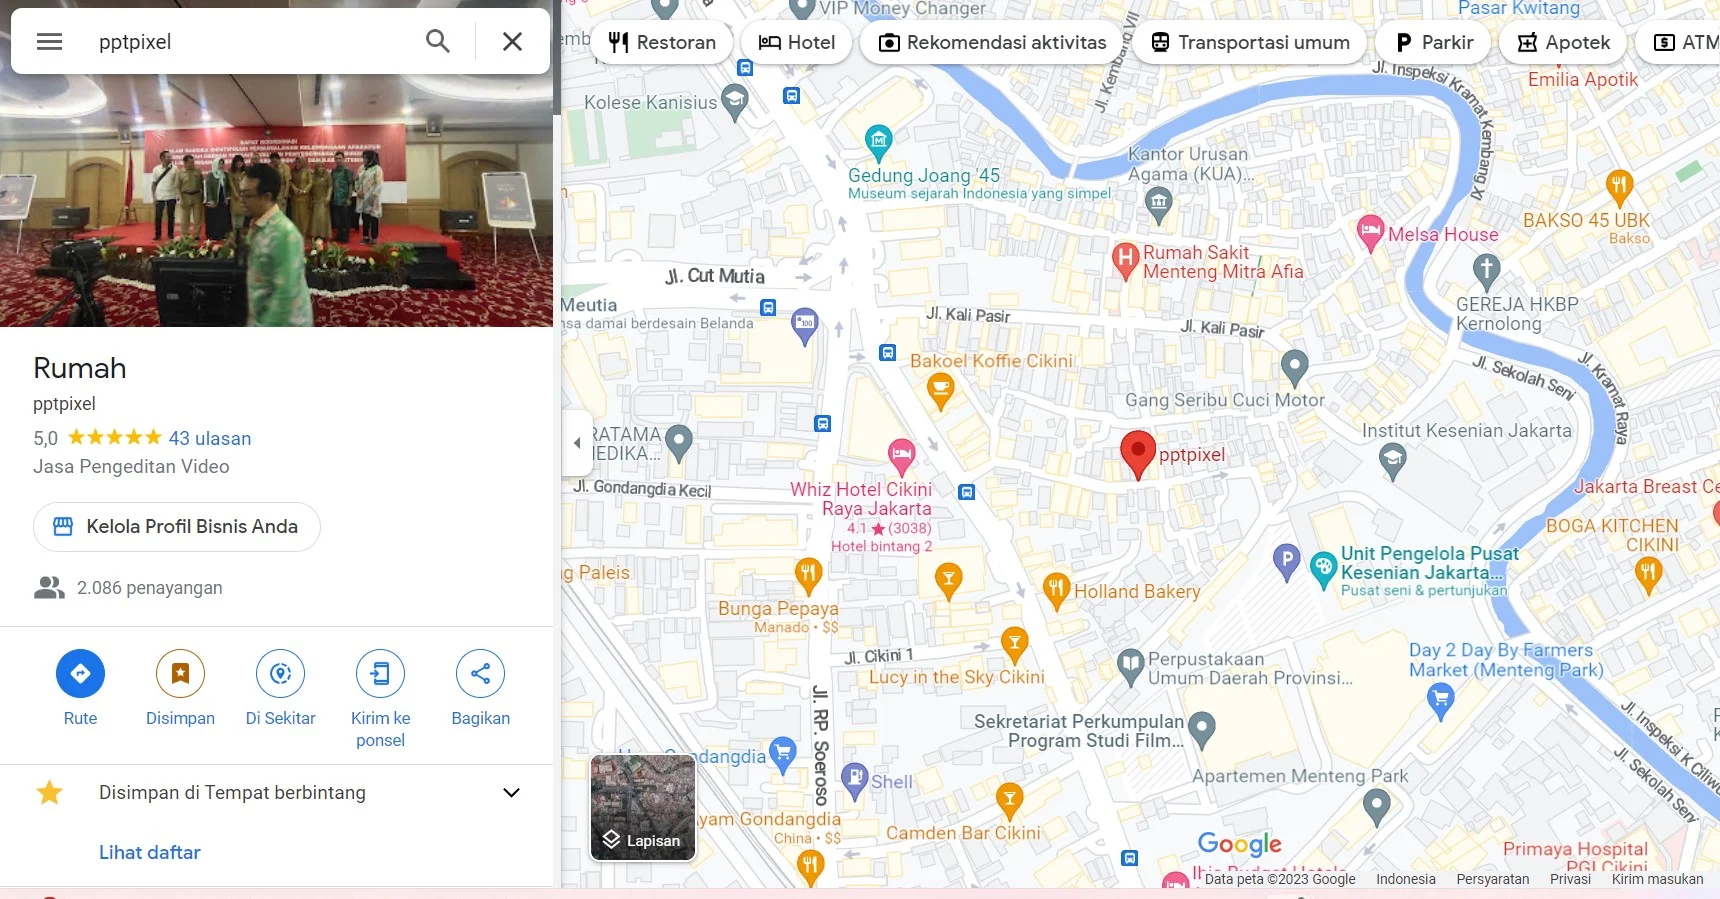 Cara Naikkan Kredibilitas Bisnis di Google Maps Dengan Mudah